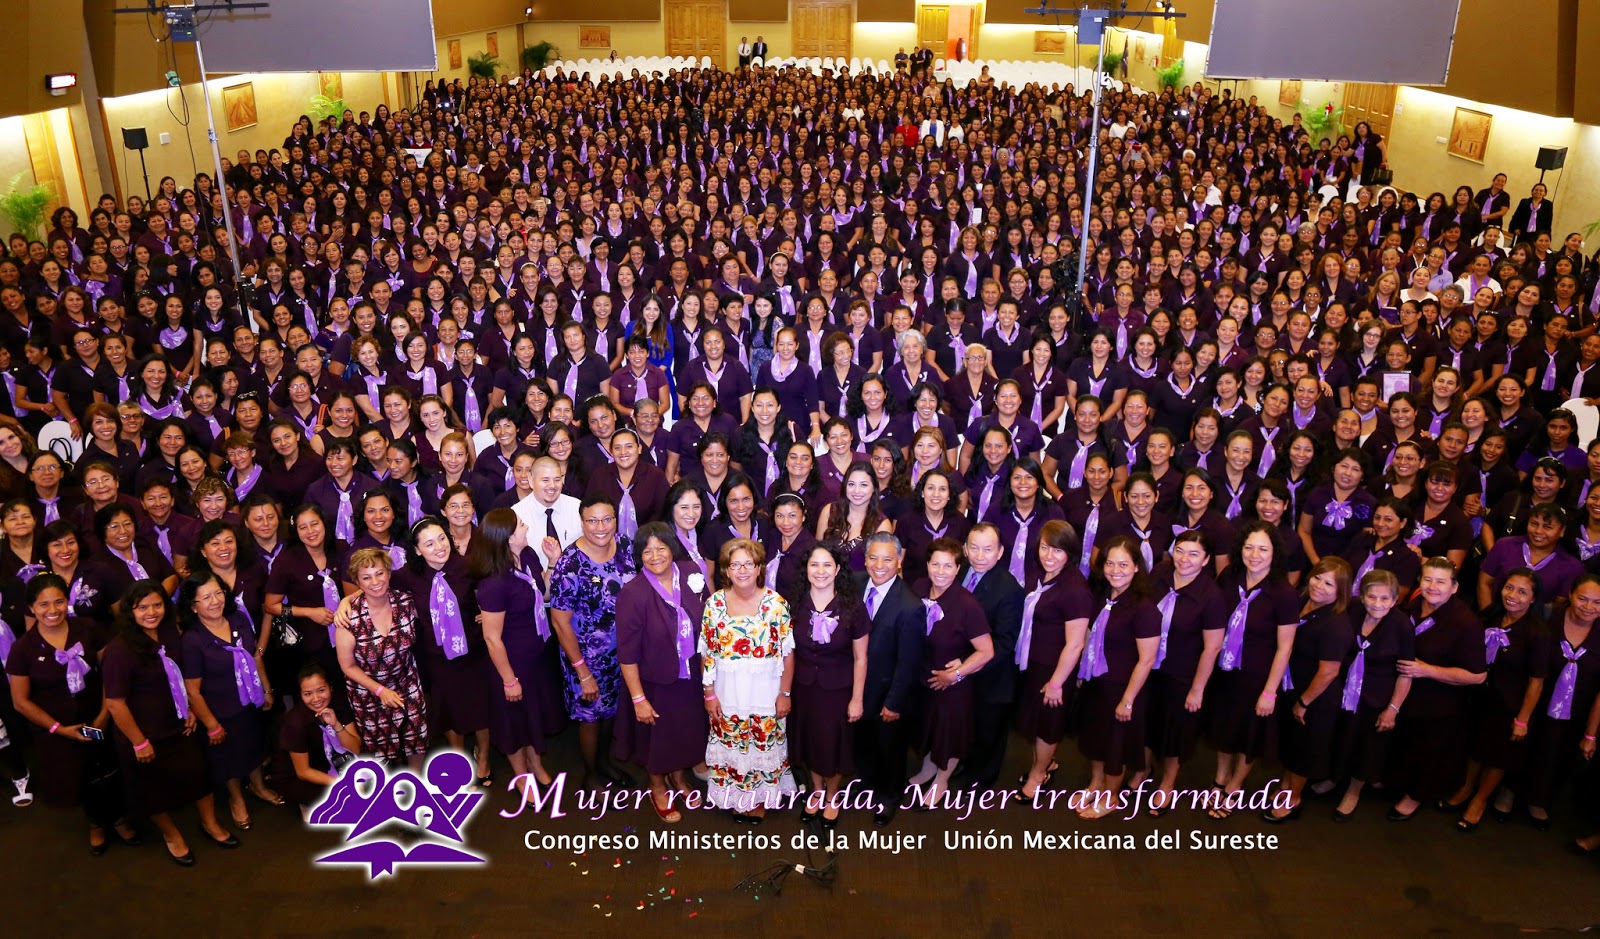 MISIÓN JA - Iglesia Adventista Del Septimo Día, MISIÓN : CONGRESO DE  MINISTERIO DE LA MUJER